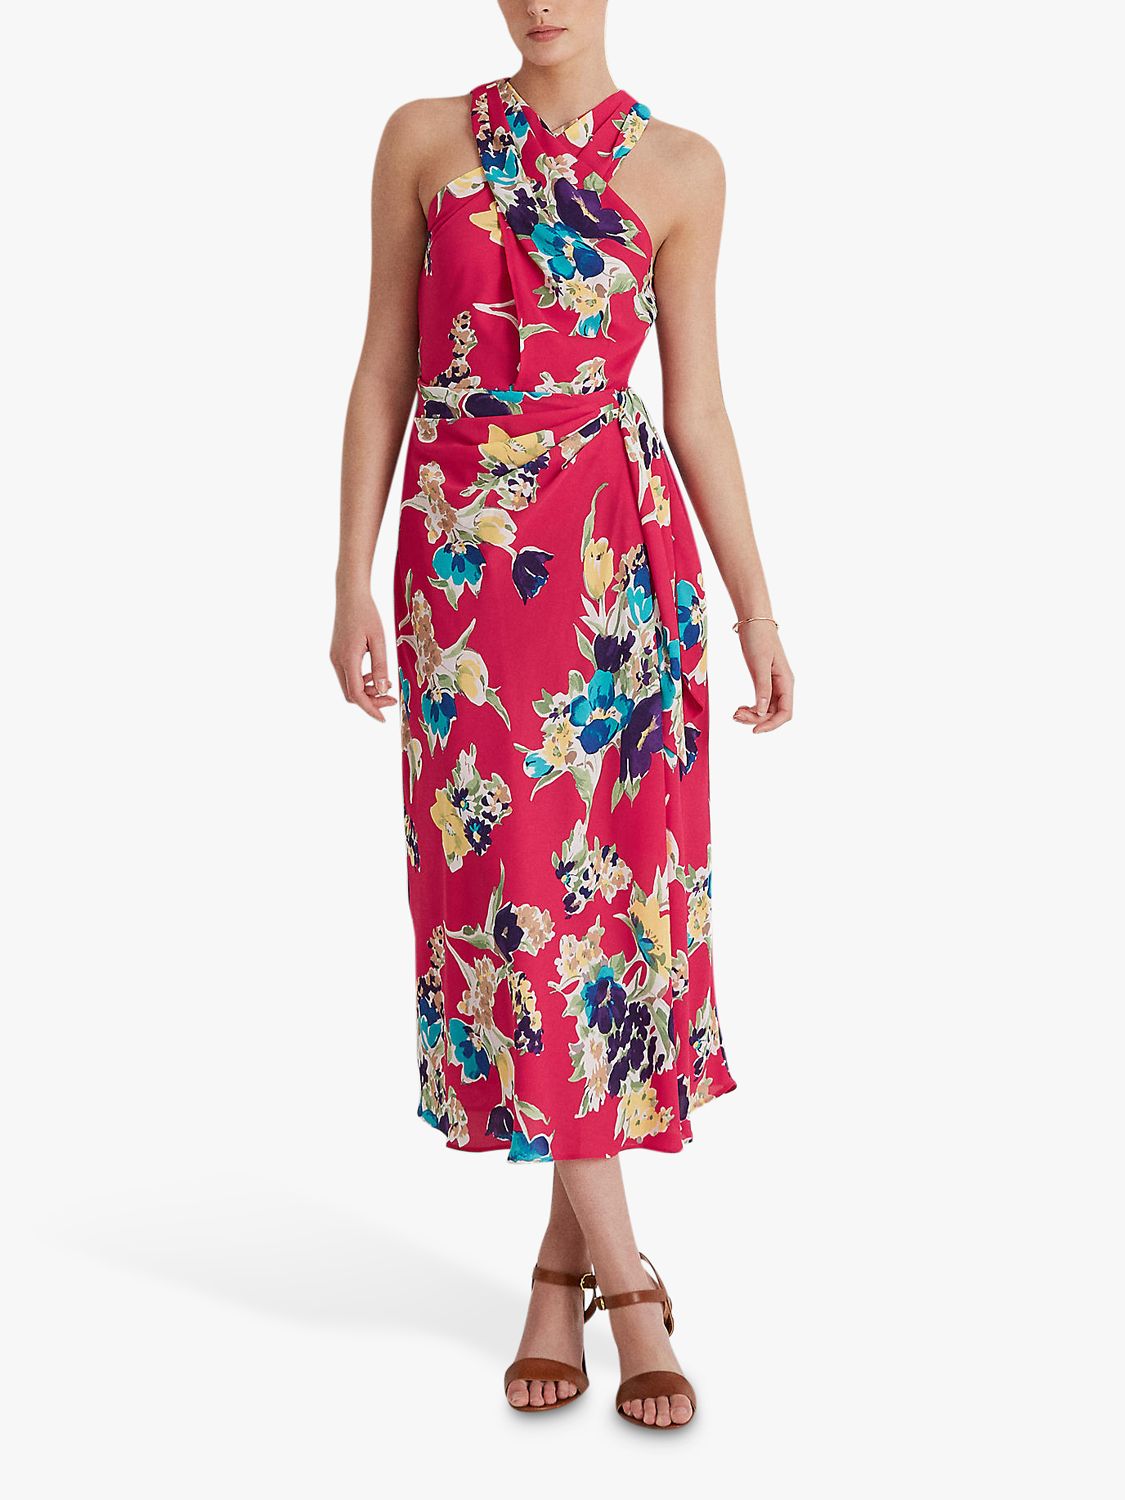 Ralph Lauren Naljay Floral Dress, Pink/Multi